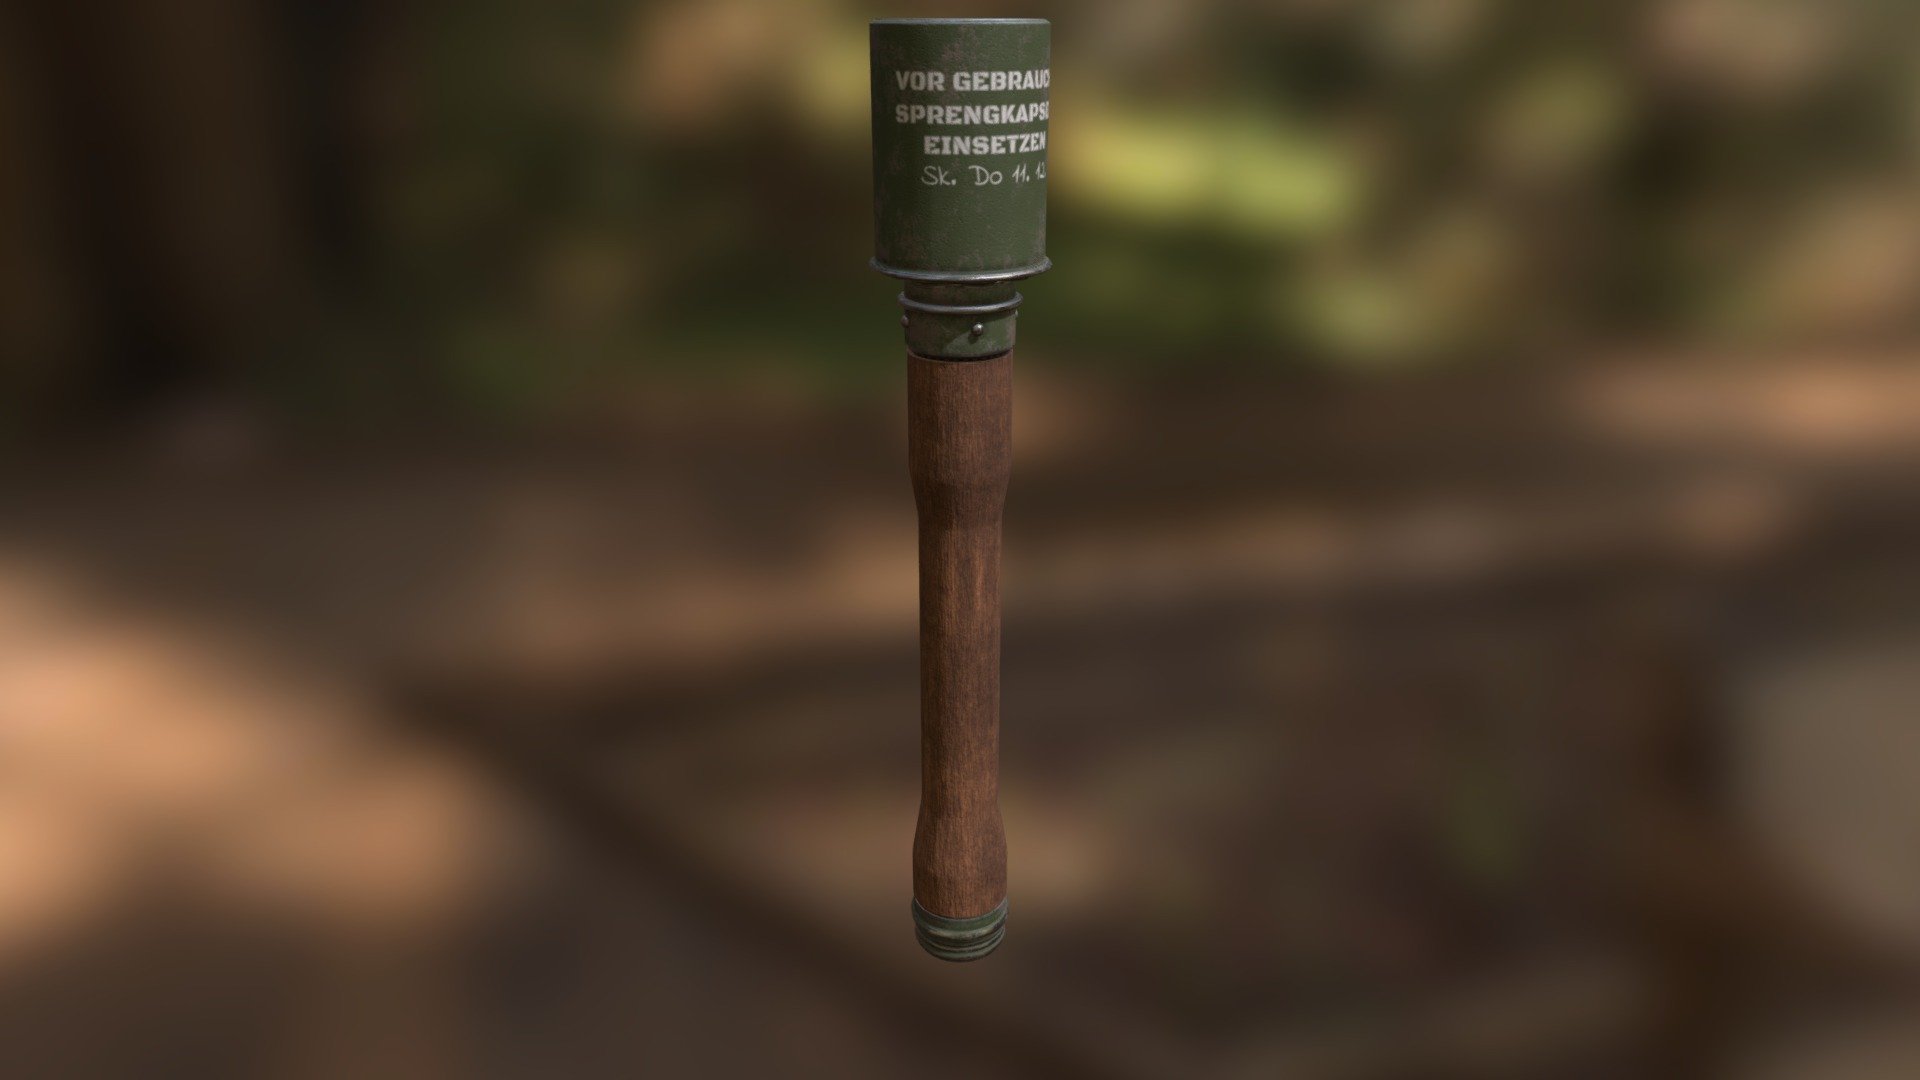 M24 Stick Grenade